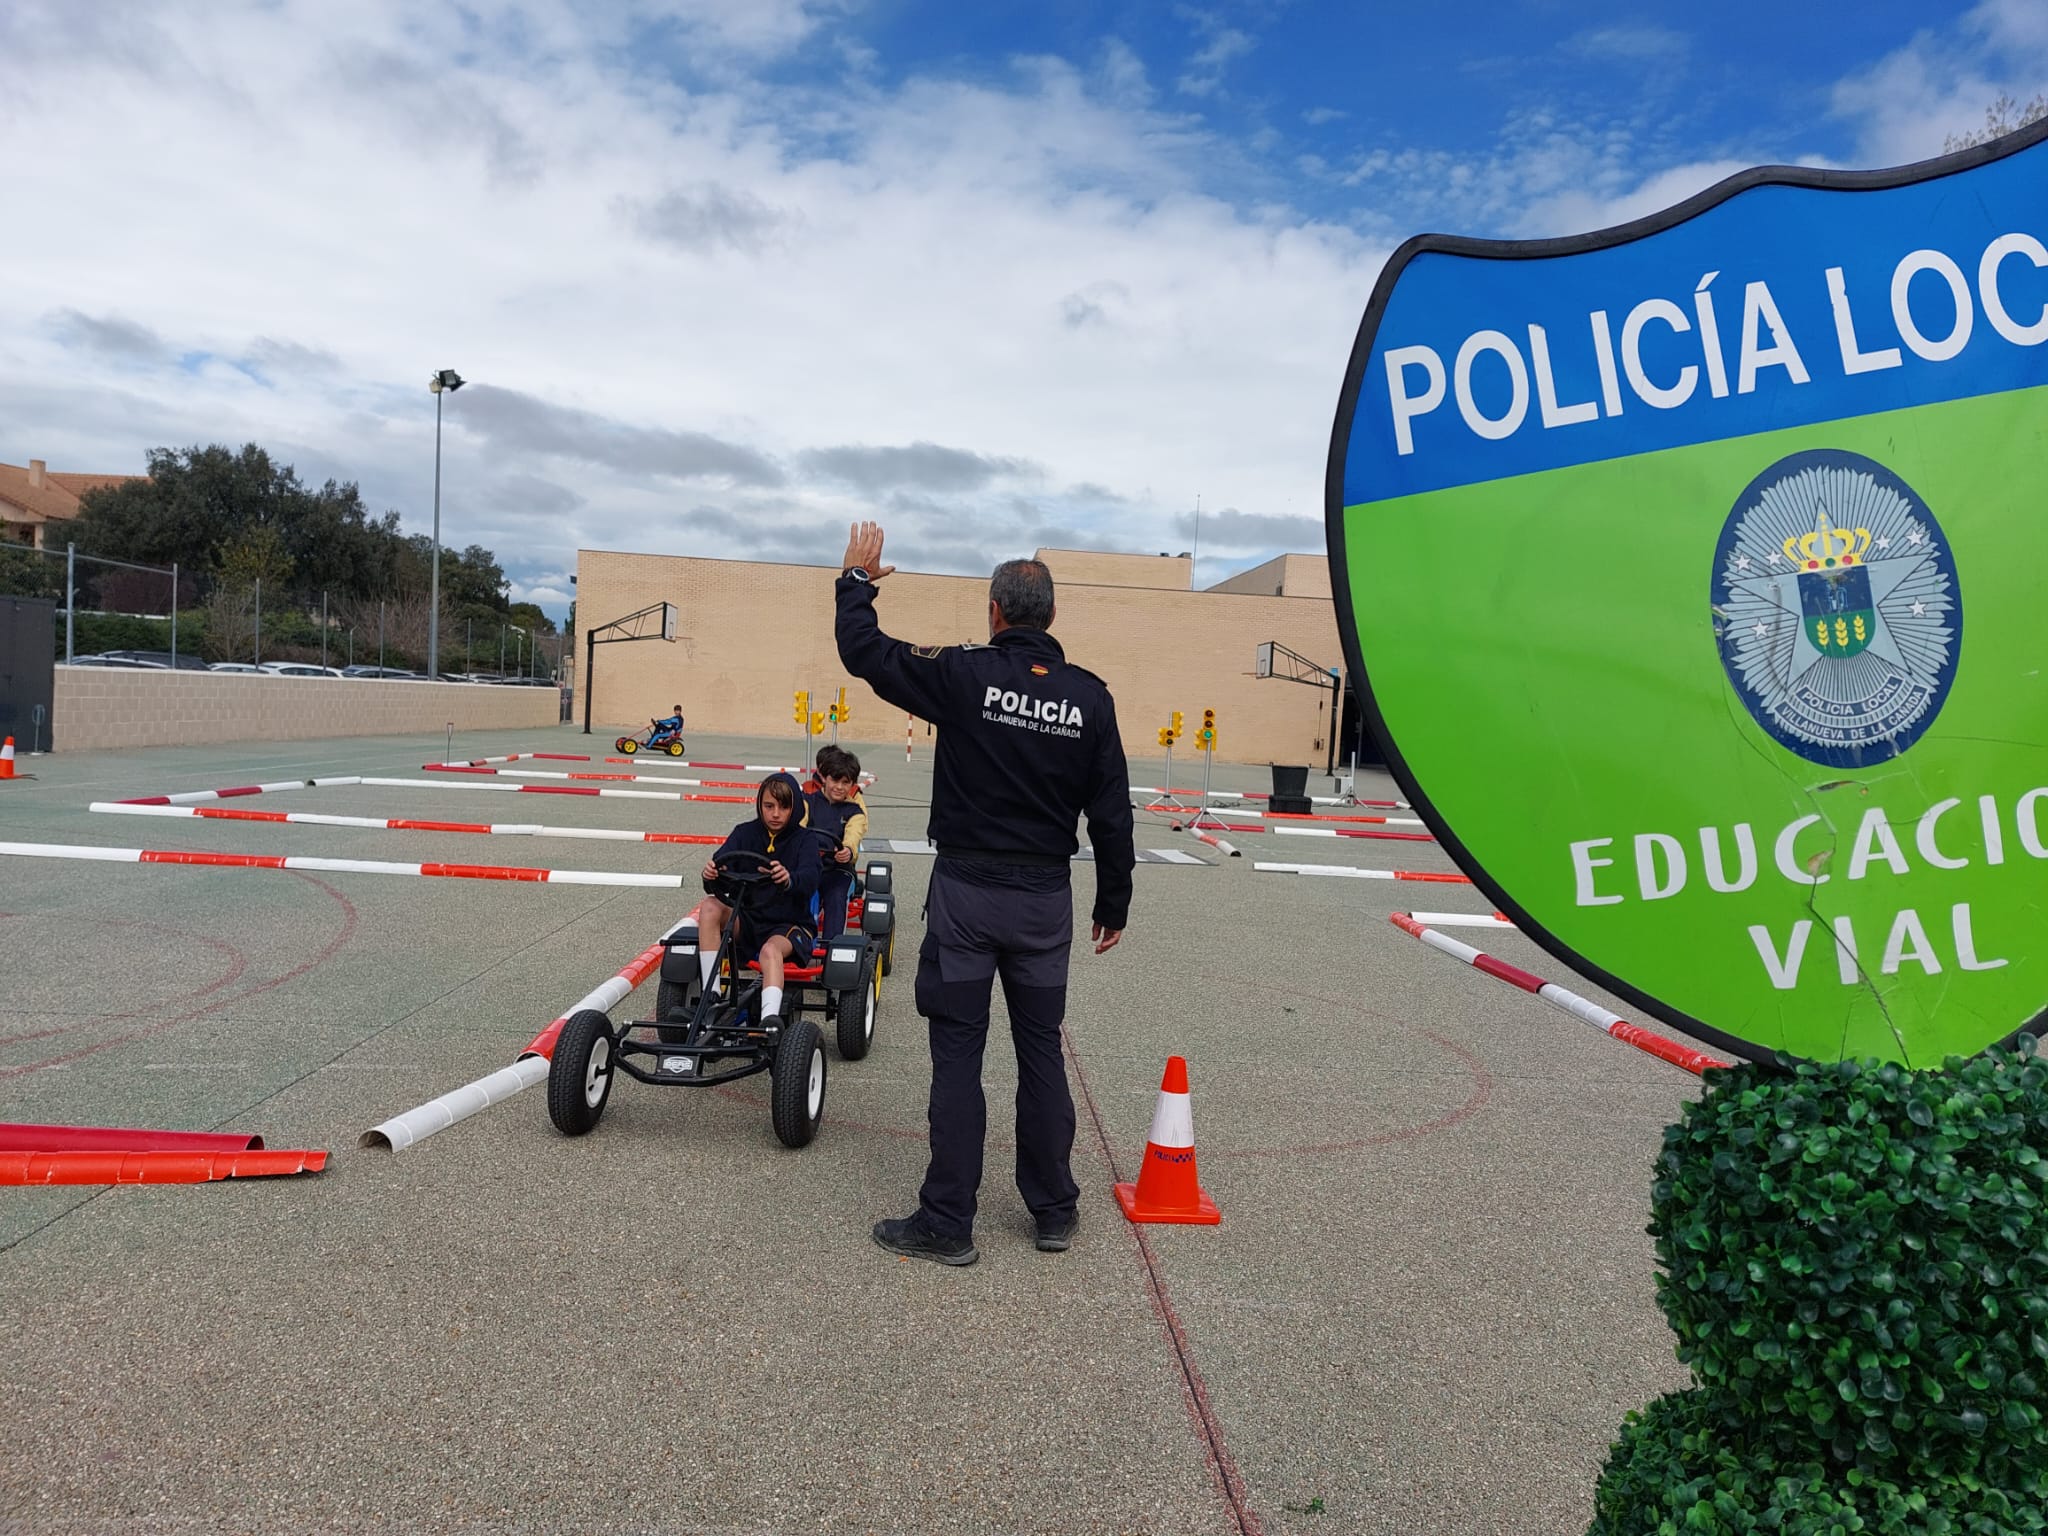 Práctica de educación vial en el circuito de karts instalado por la Policía Local en un centro educativo.